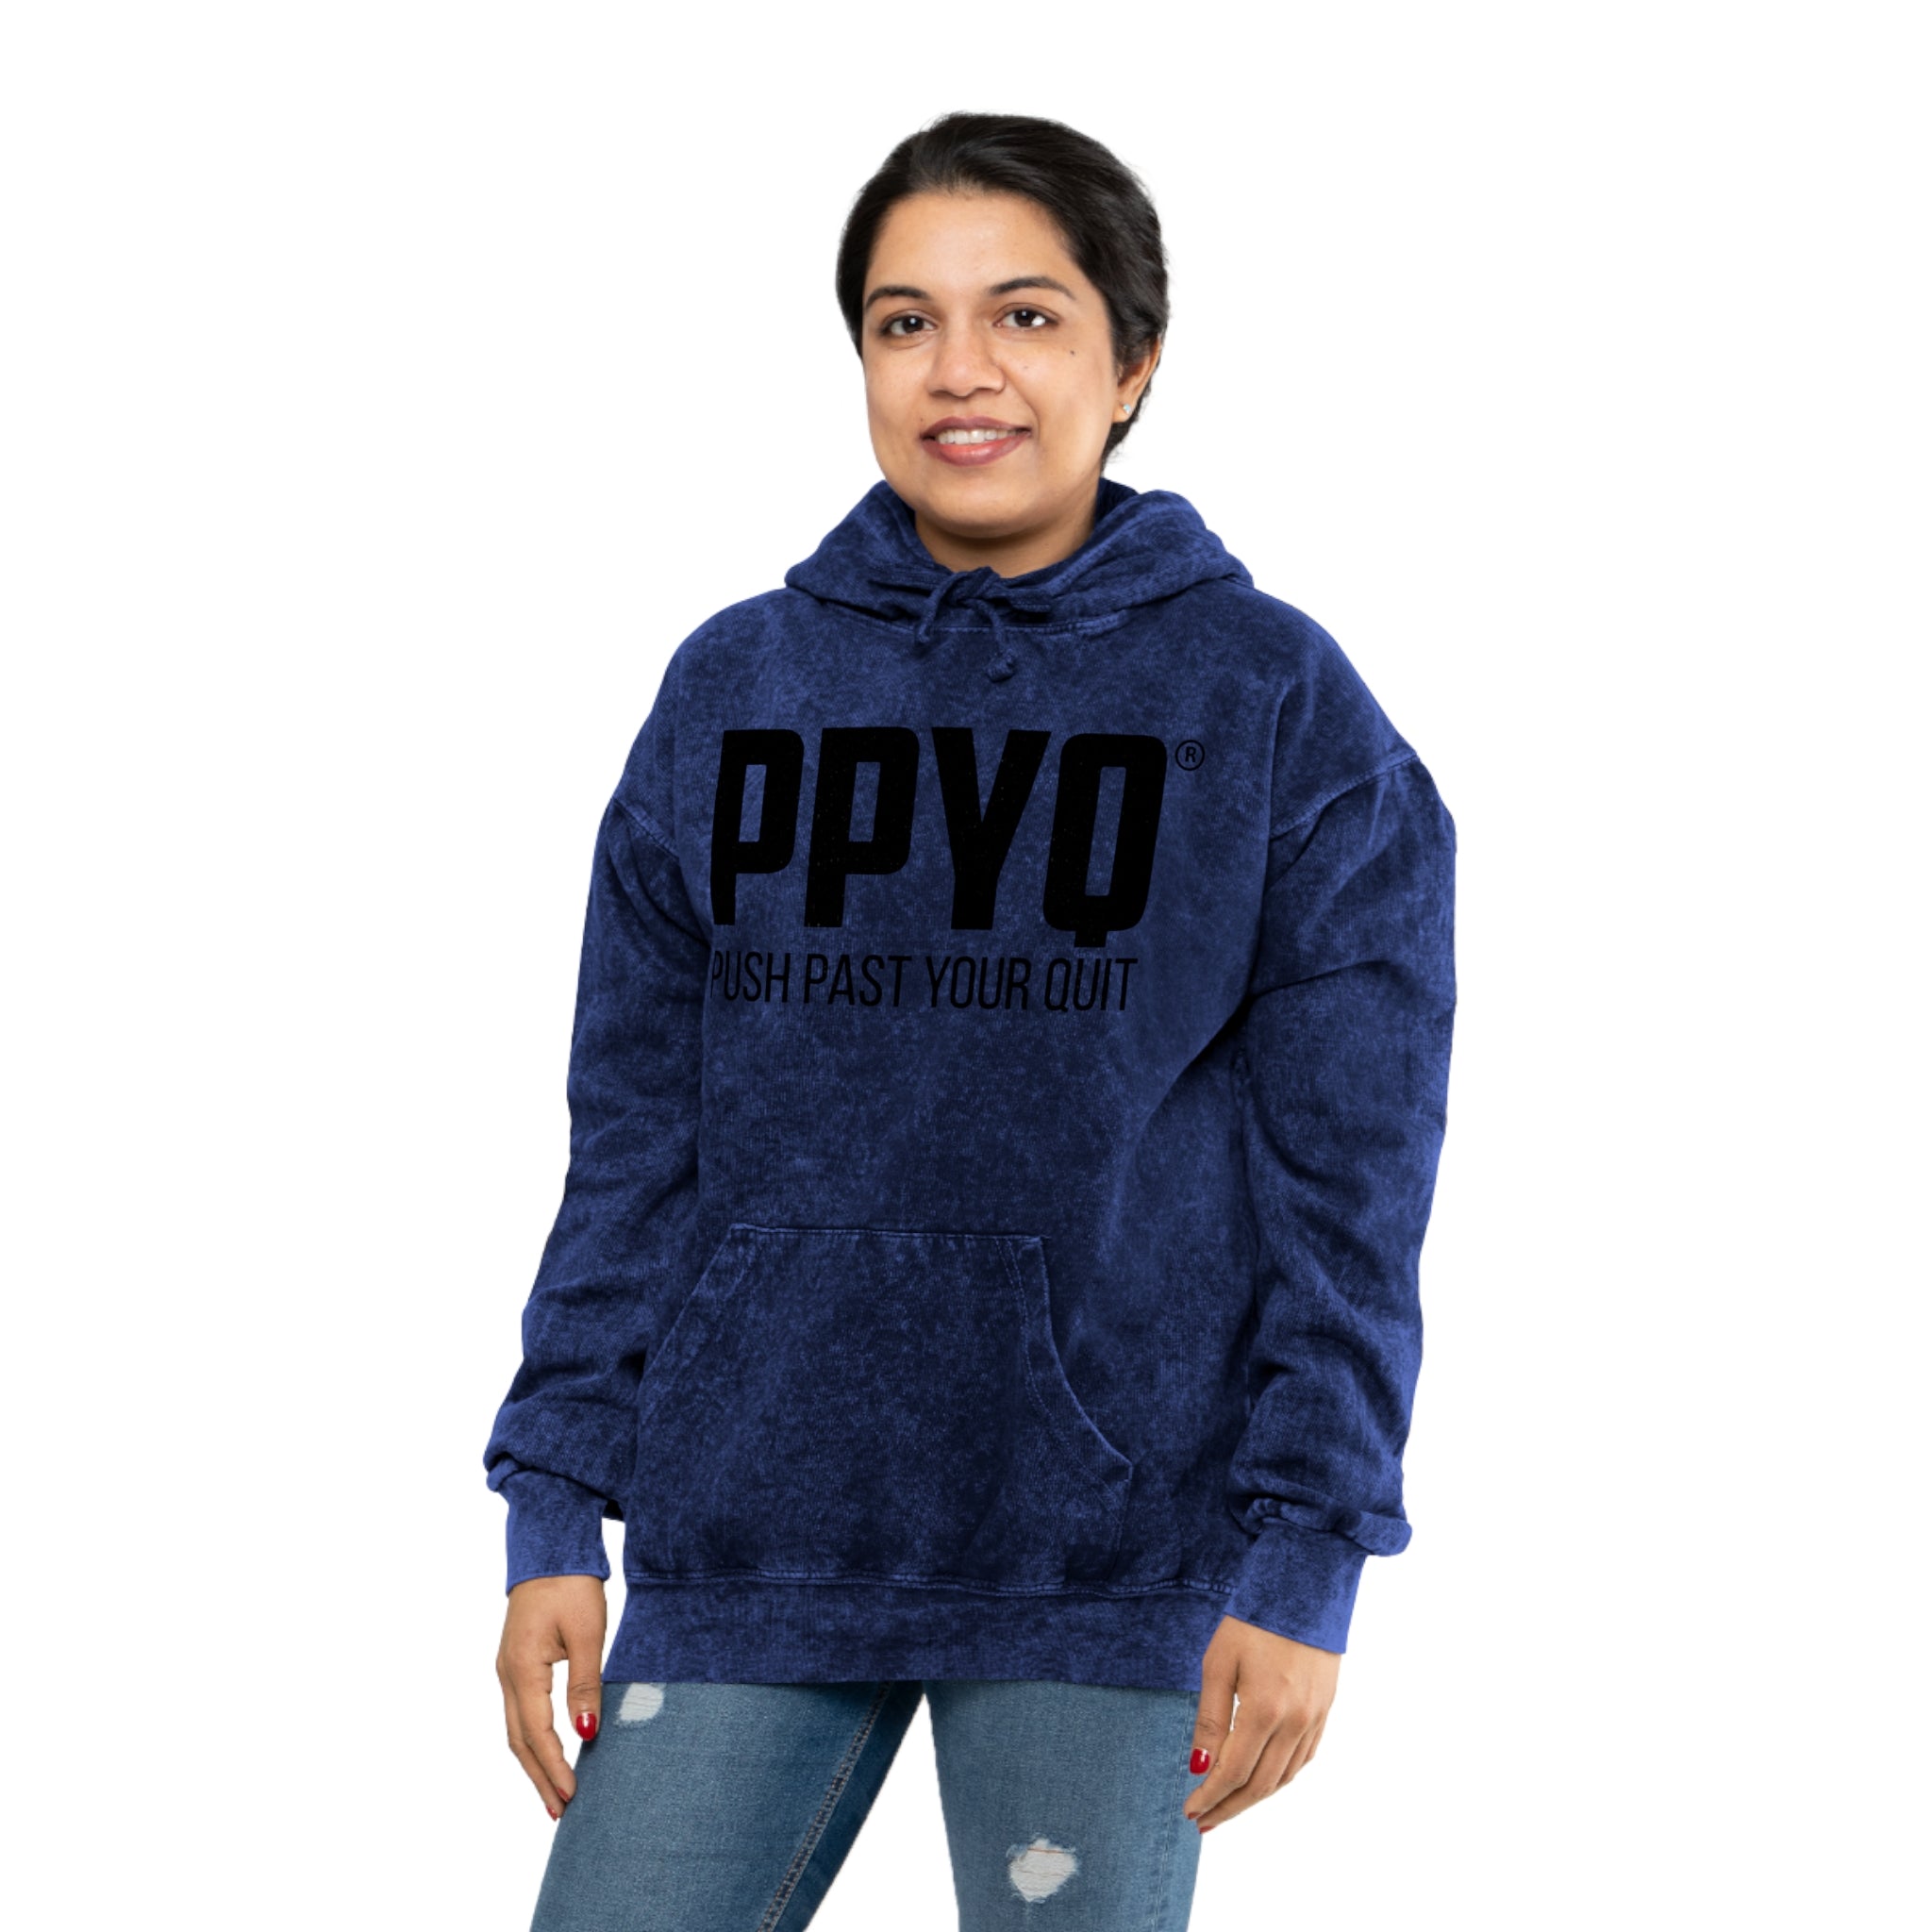 PPYQ® Original Unisex Mineral Wash Hoodie